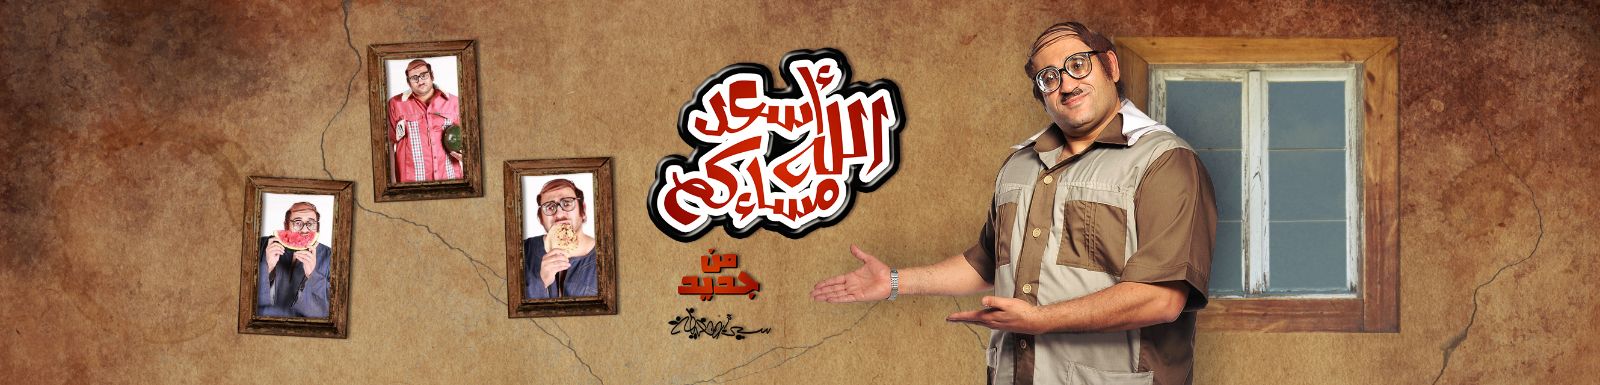 مشاهدة برنامج أسعد الله مسائكم الحلقة الرابعة اليوم الخميس 22-5-2014